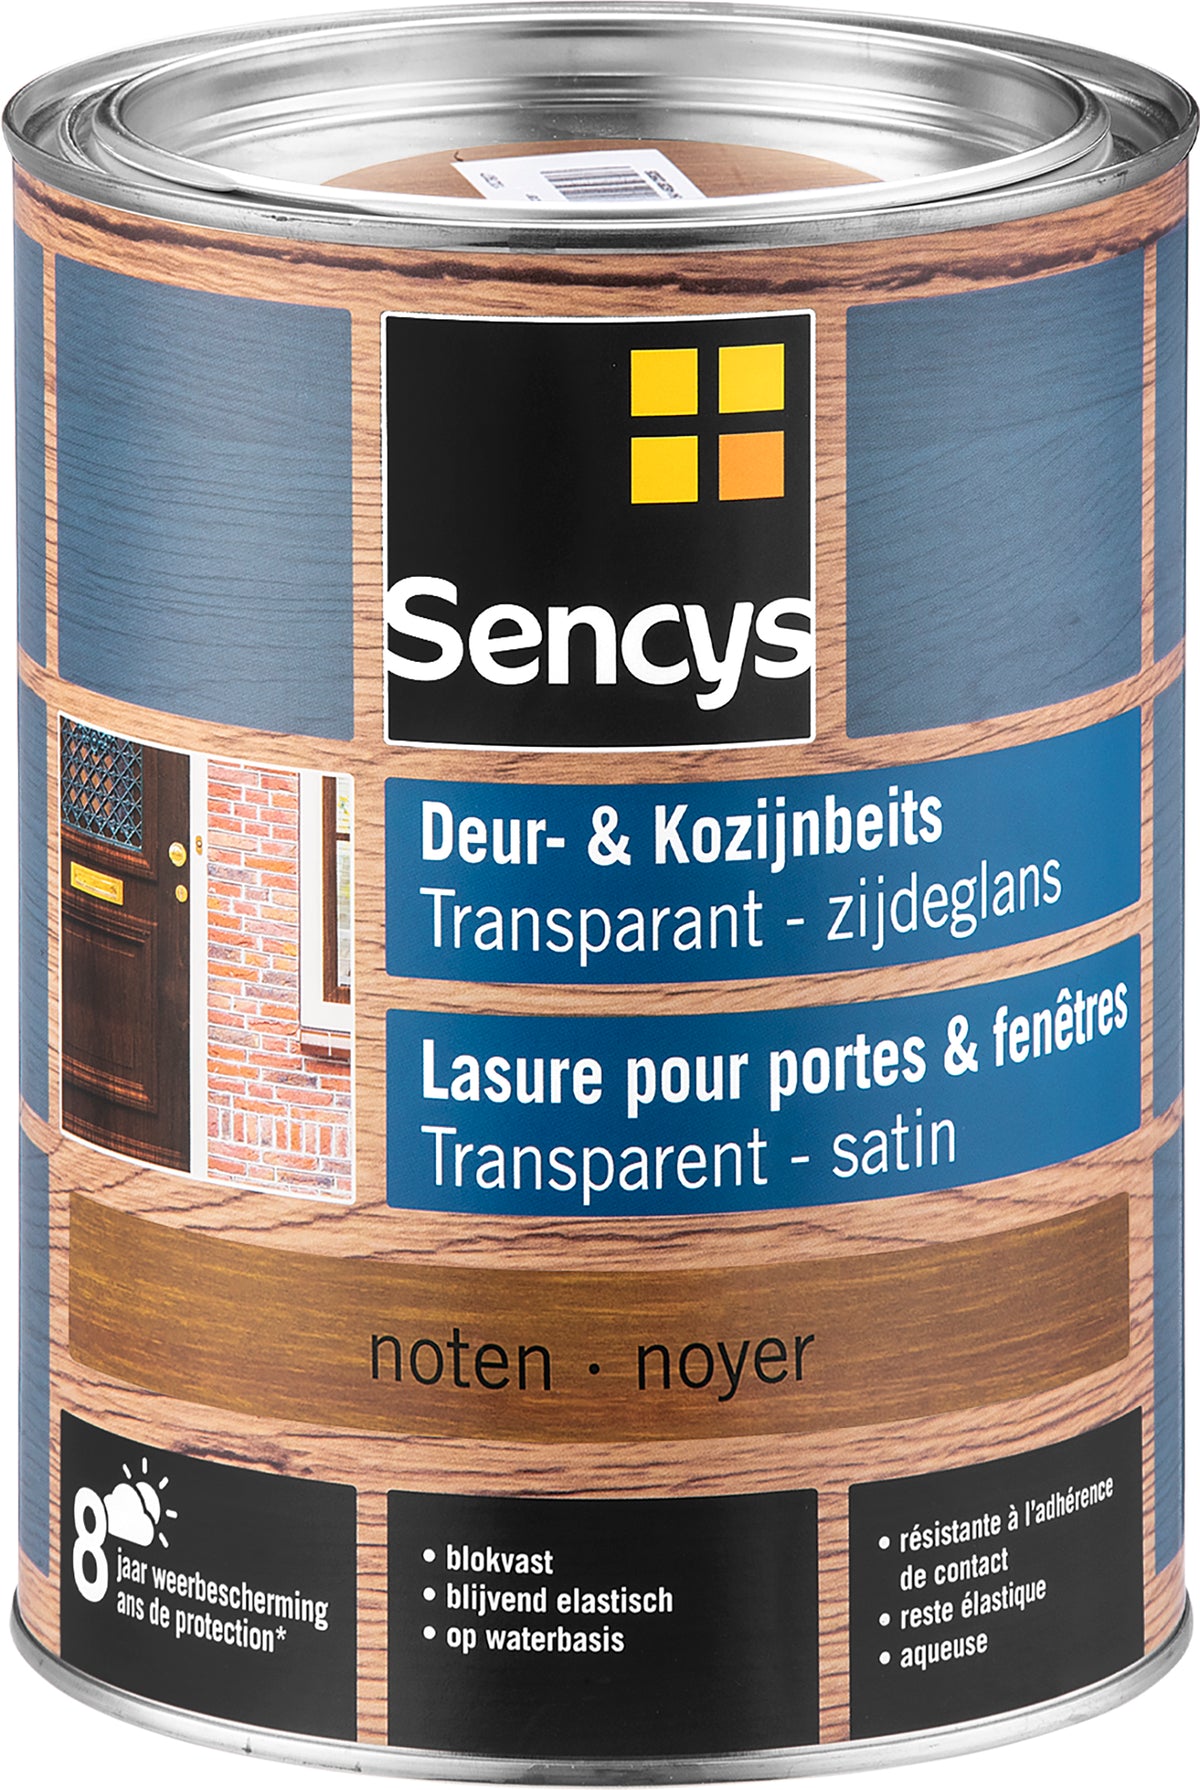 Sencys beits ramen en deuren semi-transparant zijdeglans walnoot 2,5L